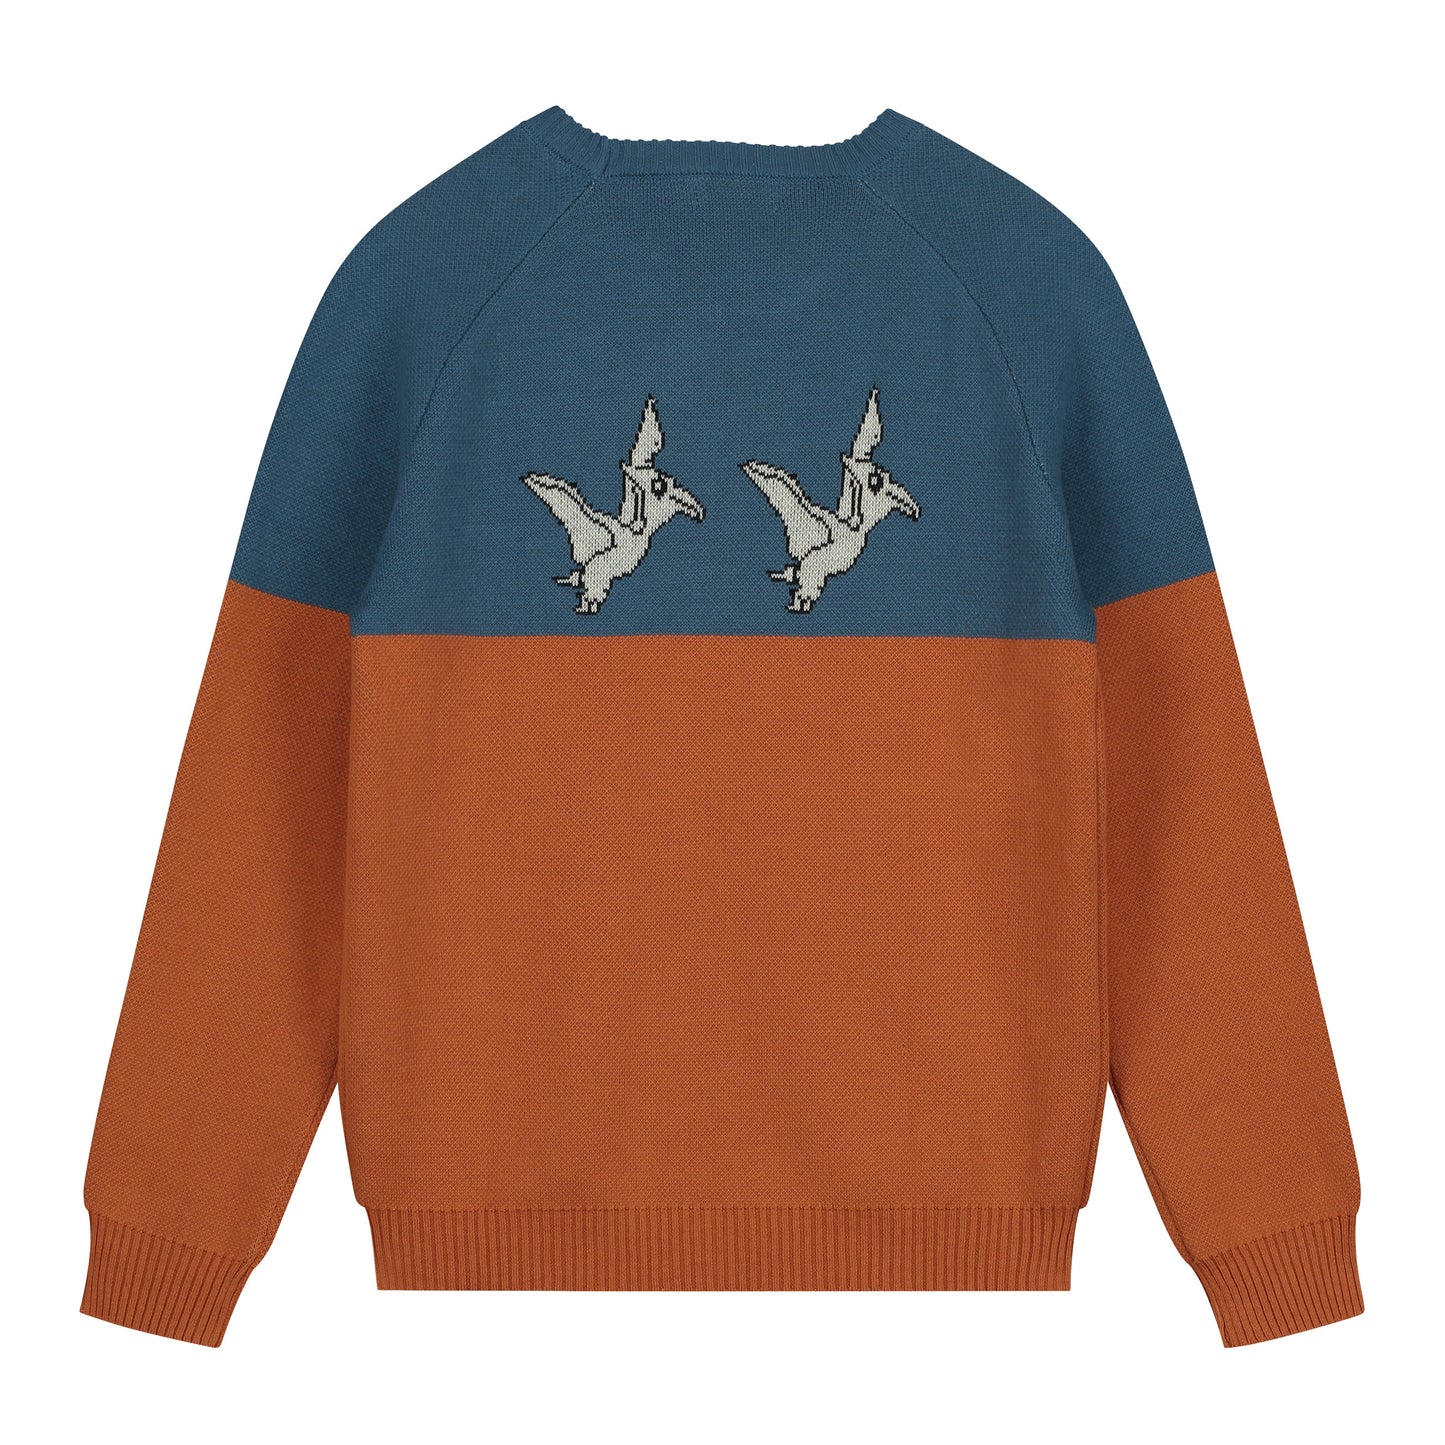 Pullover mit fliegenden Dinos aus Jaquard